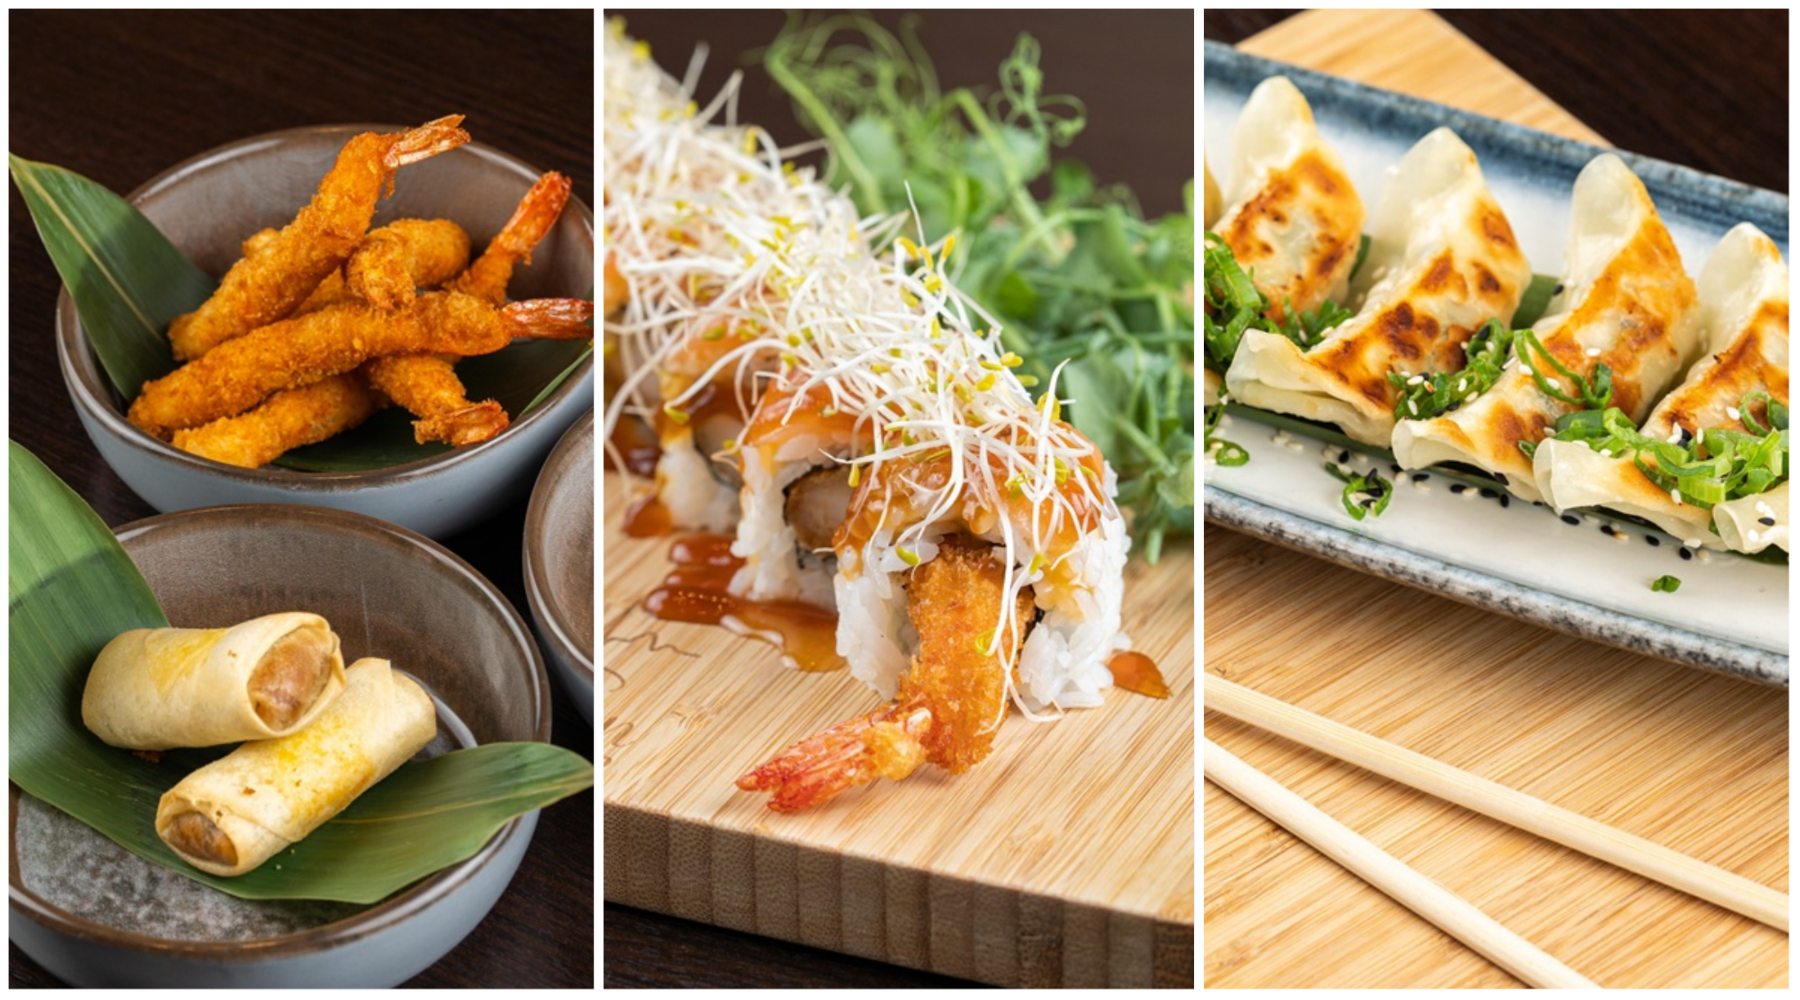 Evergreen Sushi Bar je obogatio svoju ponudu novim, izvrsnim specijalitetima azijske kuhinje